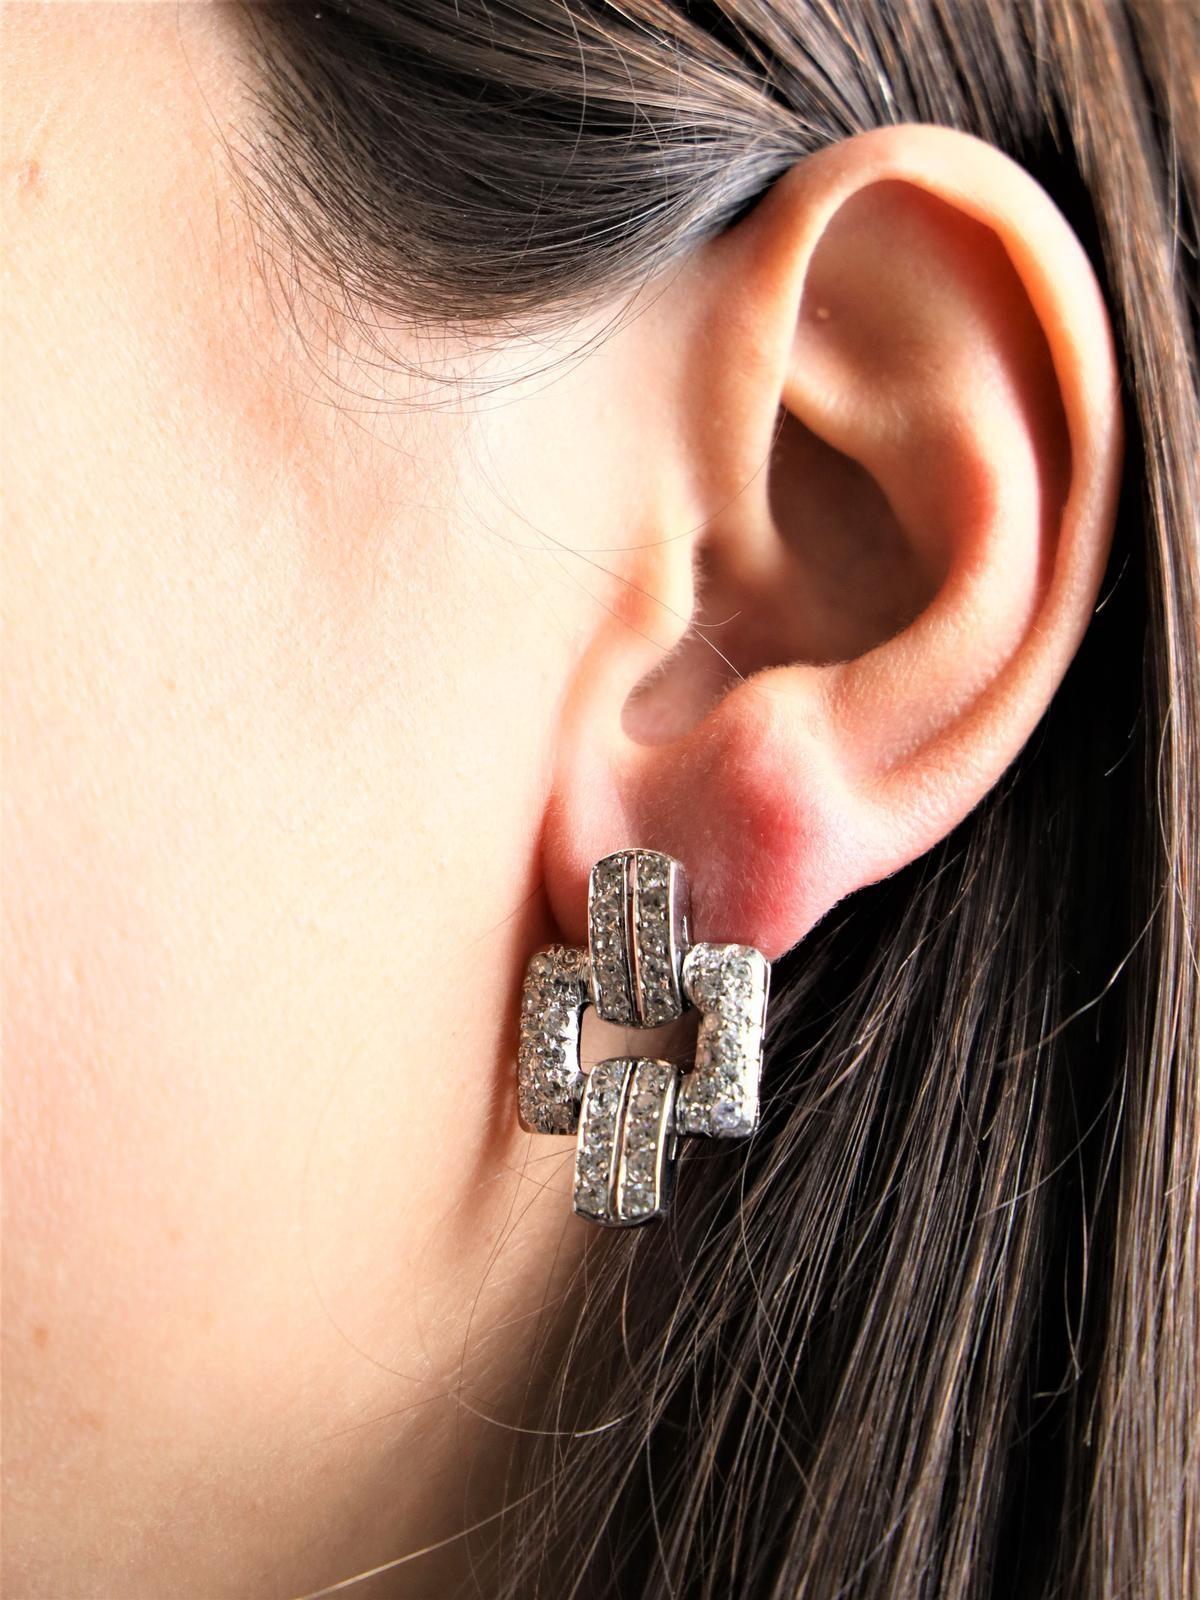 Paire de boucles d'oreilles art déco. en platine 950 millièmes et or blanc 750 millièmes (18 carats). serties de 84 diamants (42 chacun). taille huit/huit. environ 0.04 ct chacune. Poids total des diamants : 3,36 cts. Longueur : 2,55 cm. Largeur :